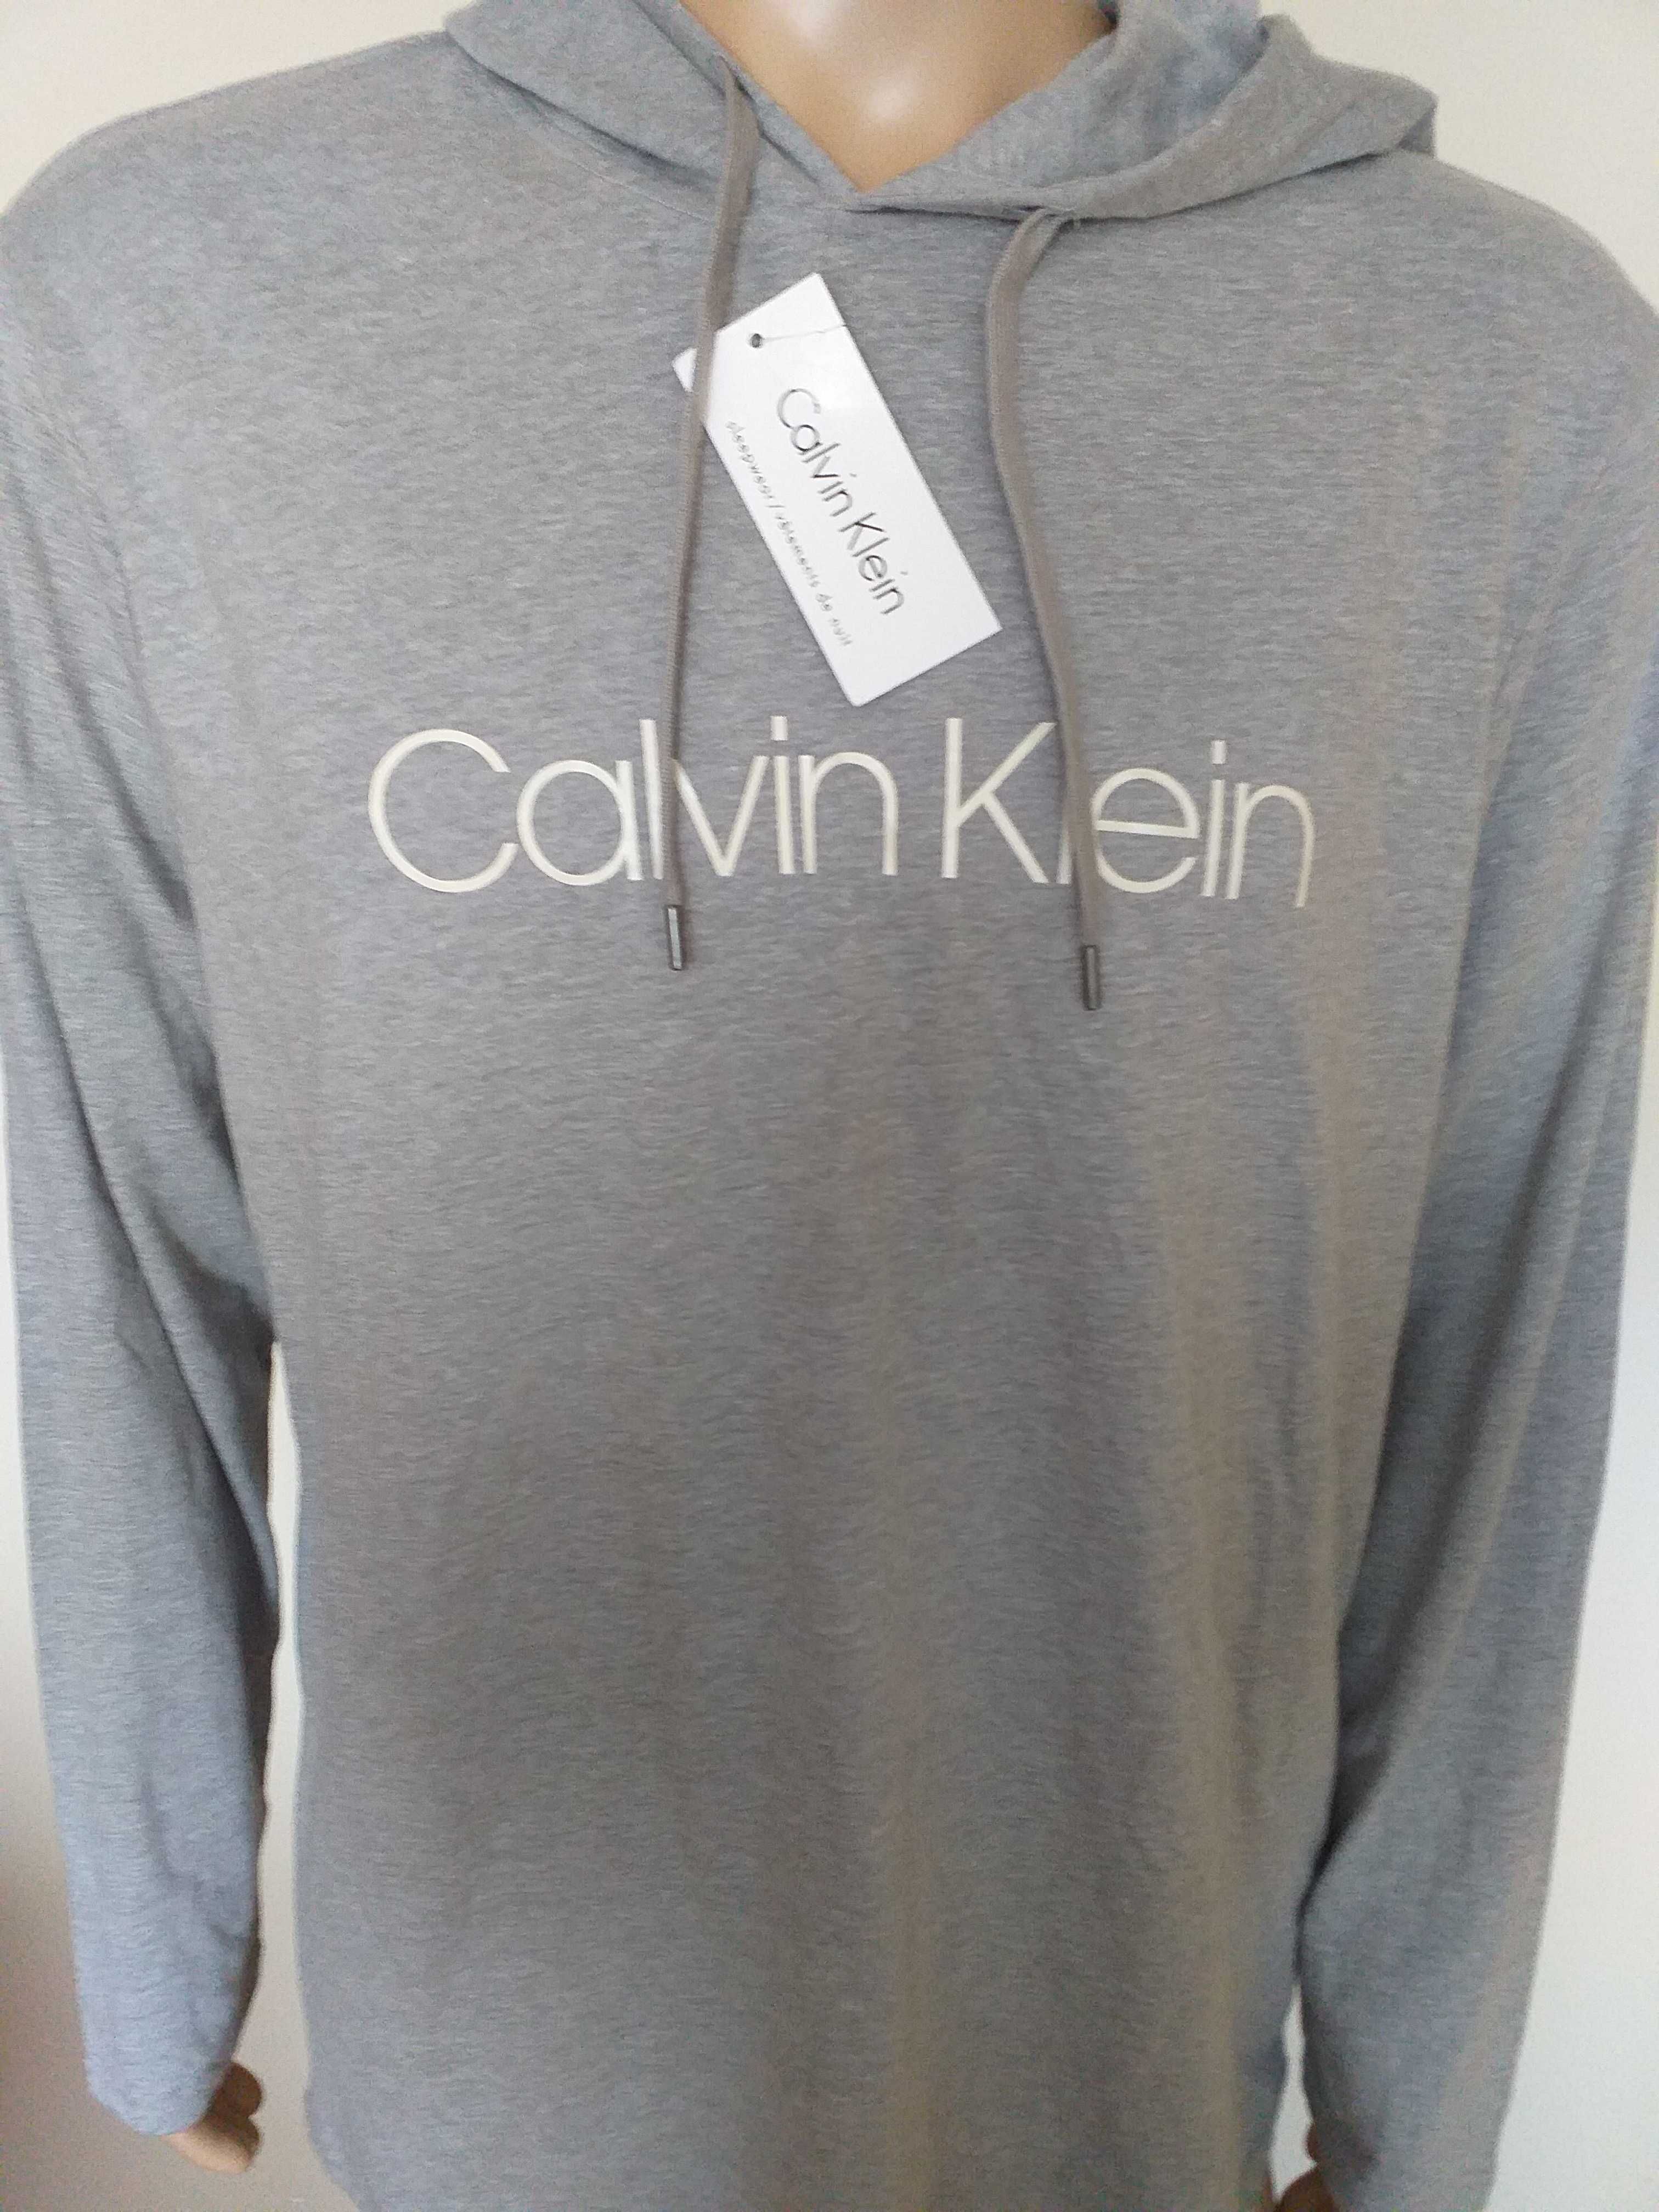 Bluza z kapturem do spania męska Calvin Klein XL